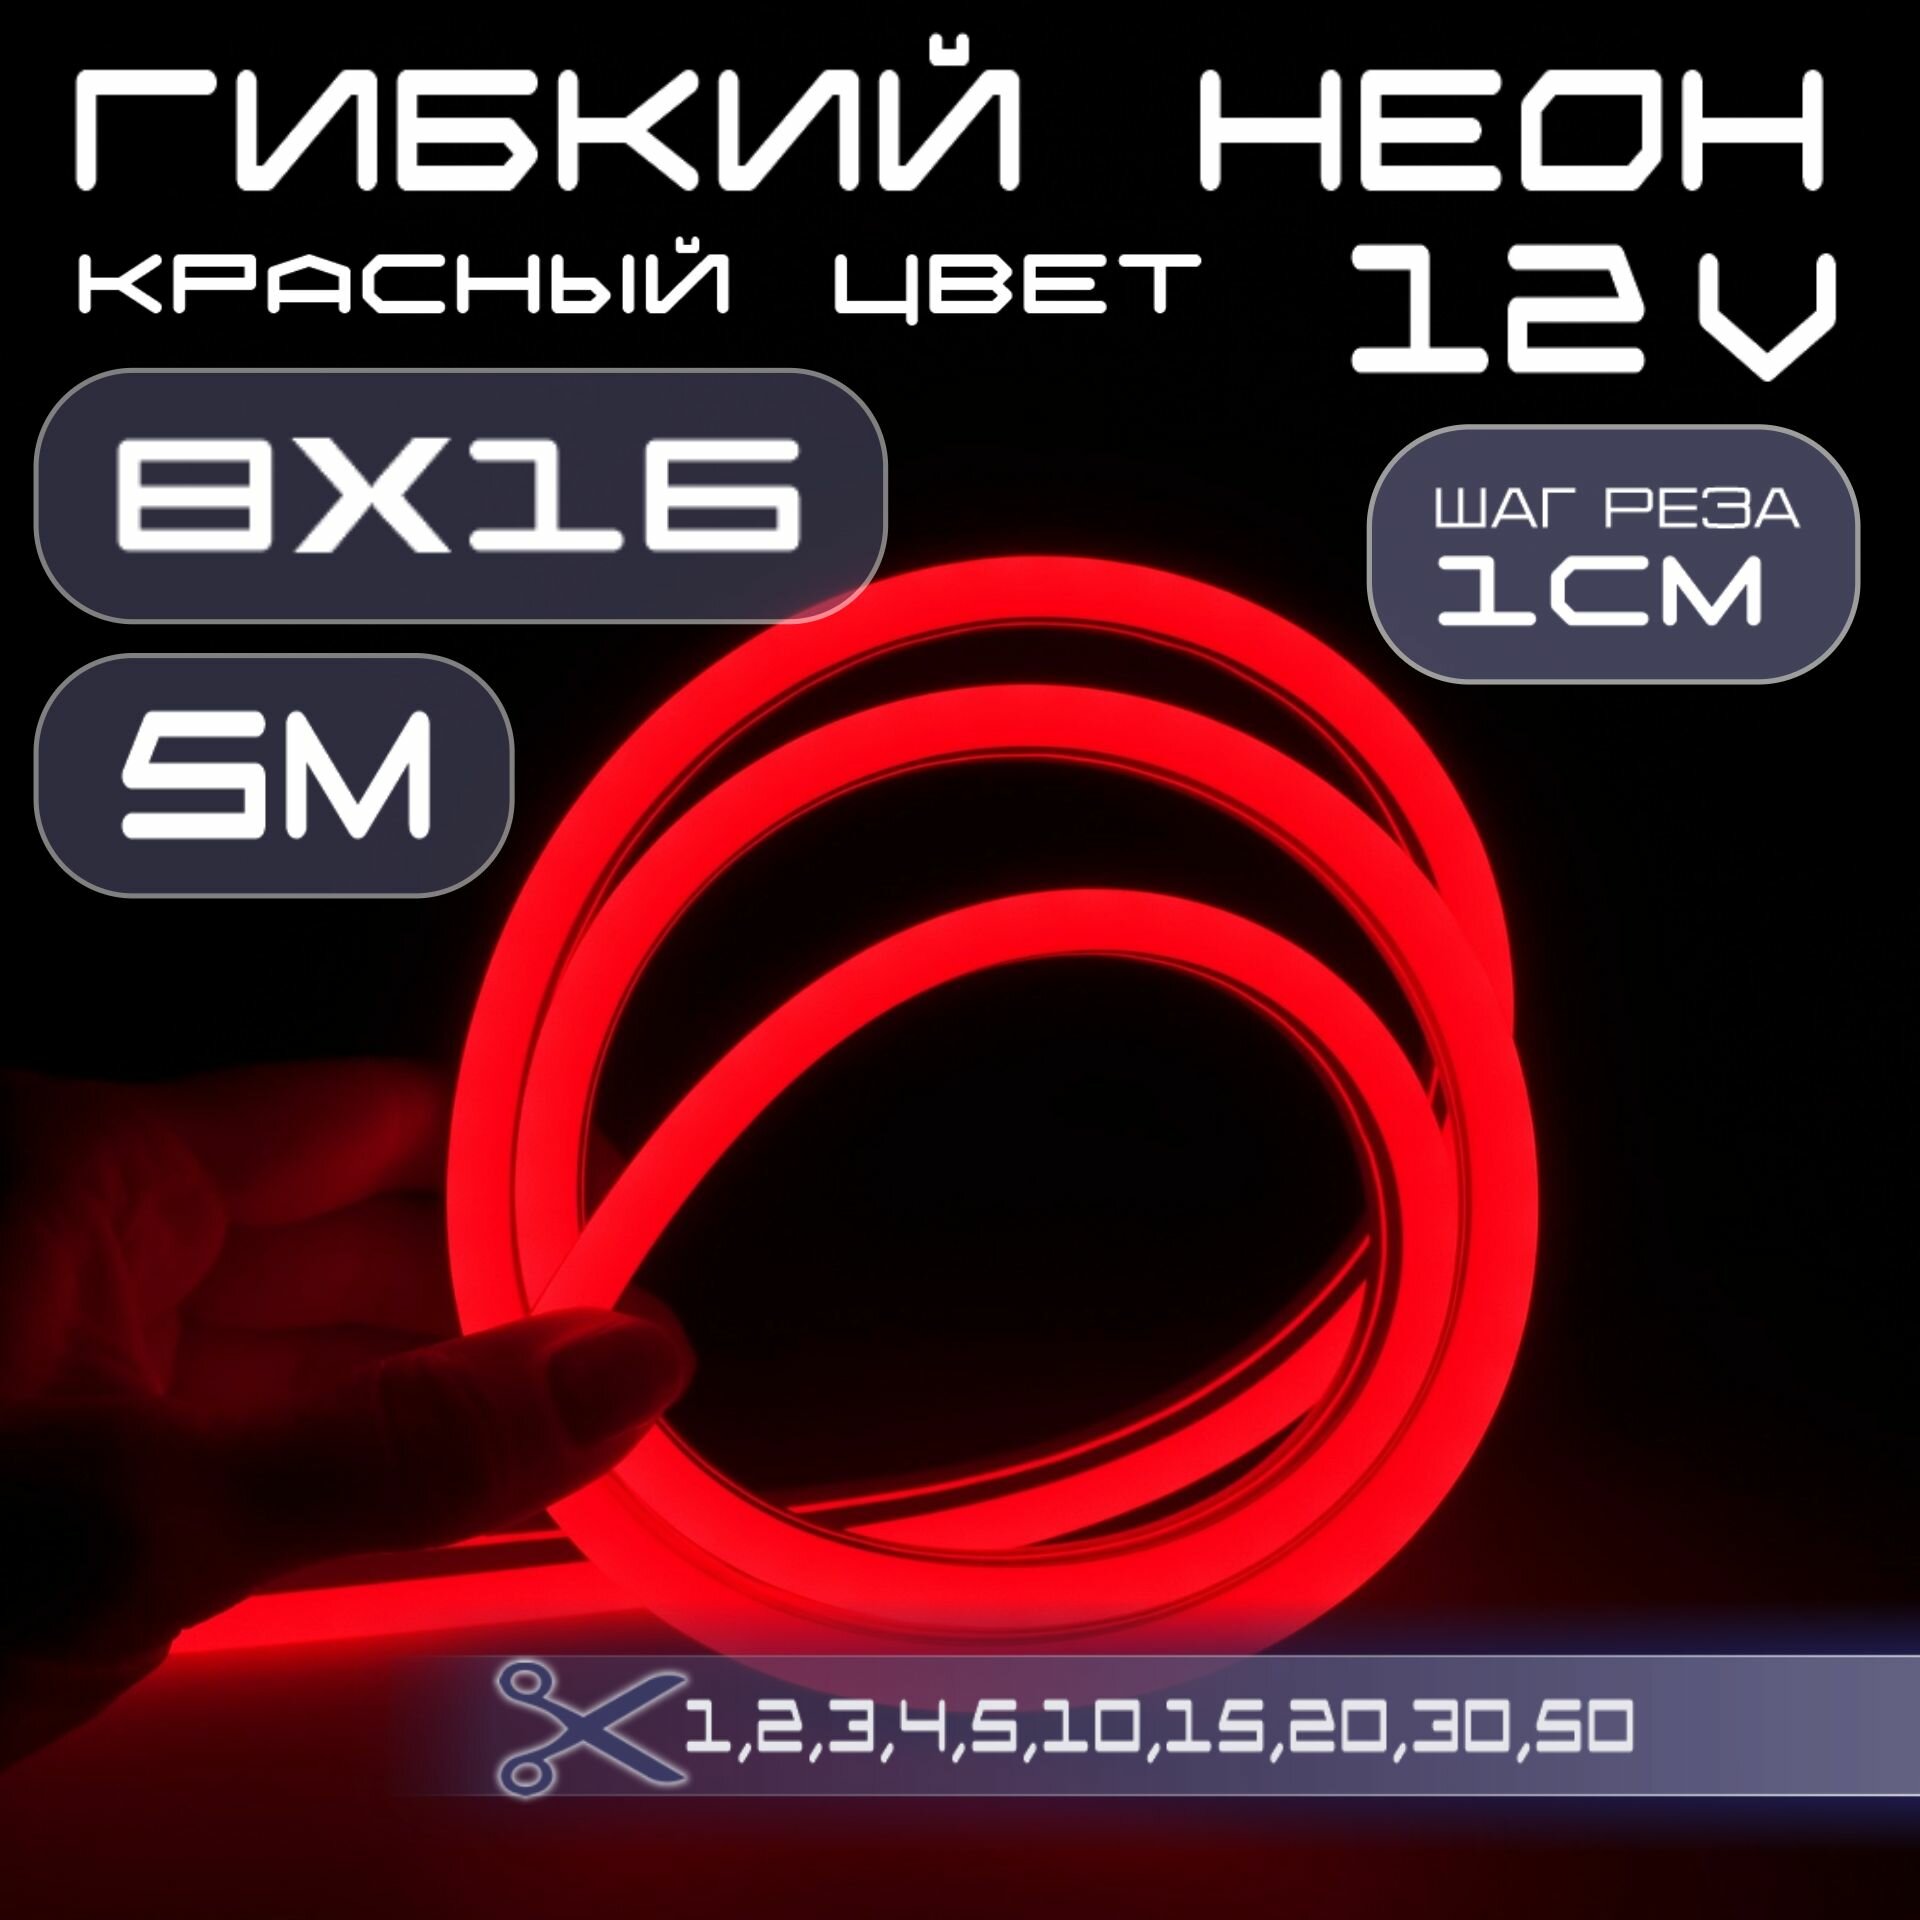 Гибкий неон 12V красный 8х16, 10W, 110 Led, IP67 шаг реза 1 см, 5 метров